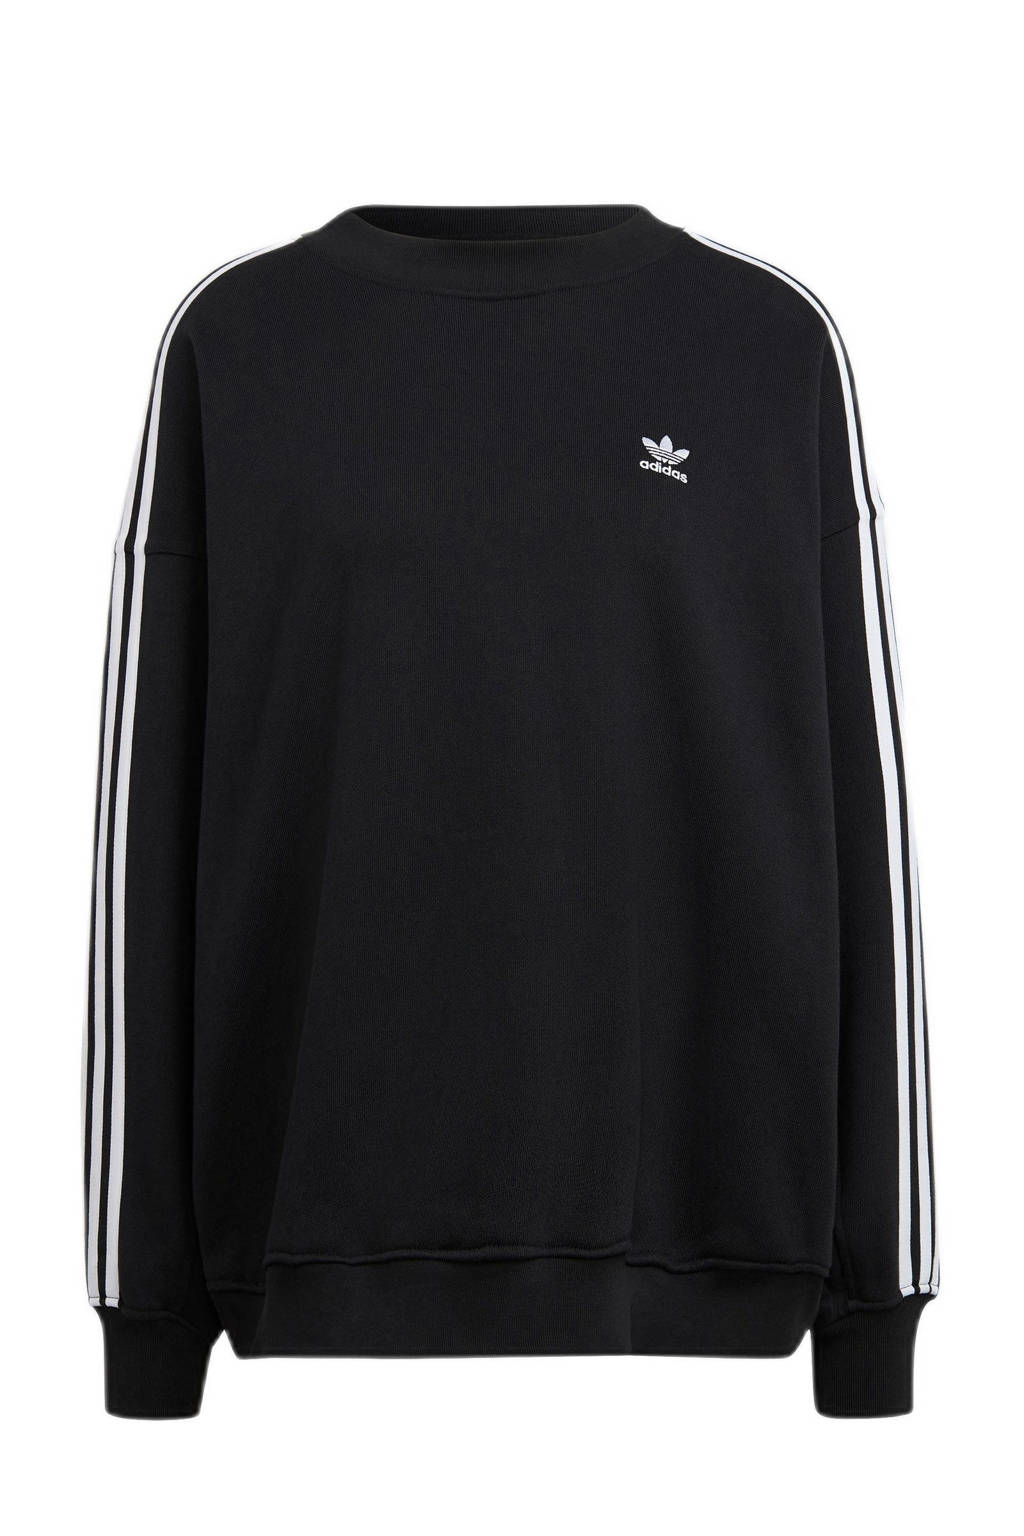 adidas Originals Adicolor sweater zwart, Zwart